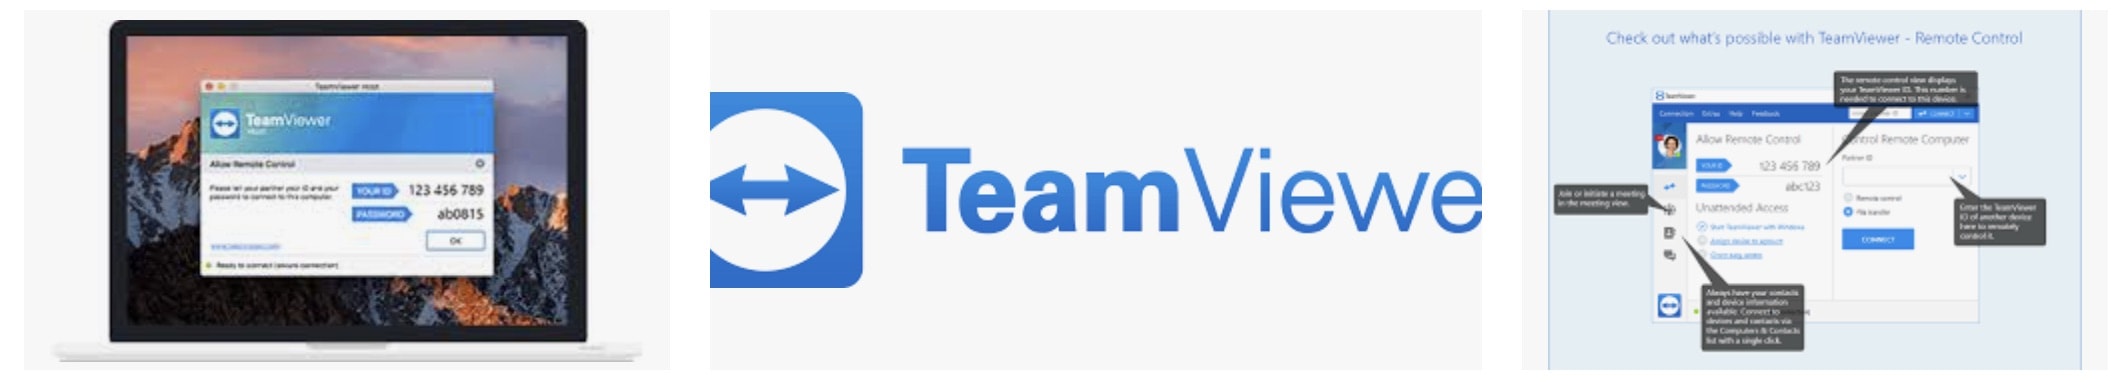 teamviewer download nederlands